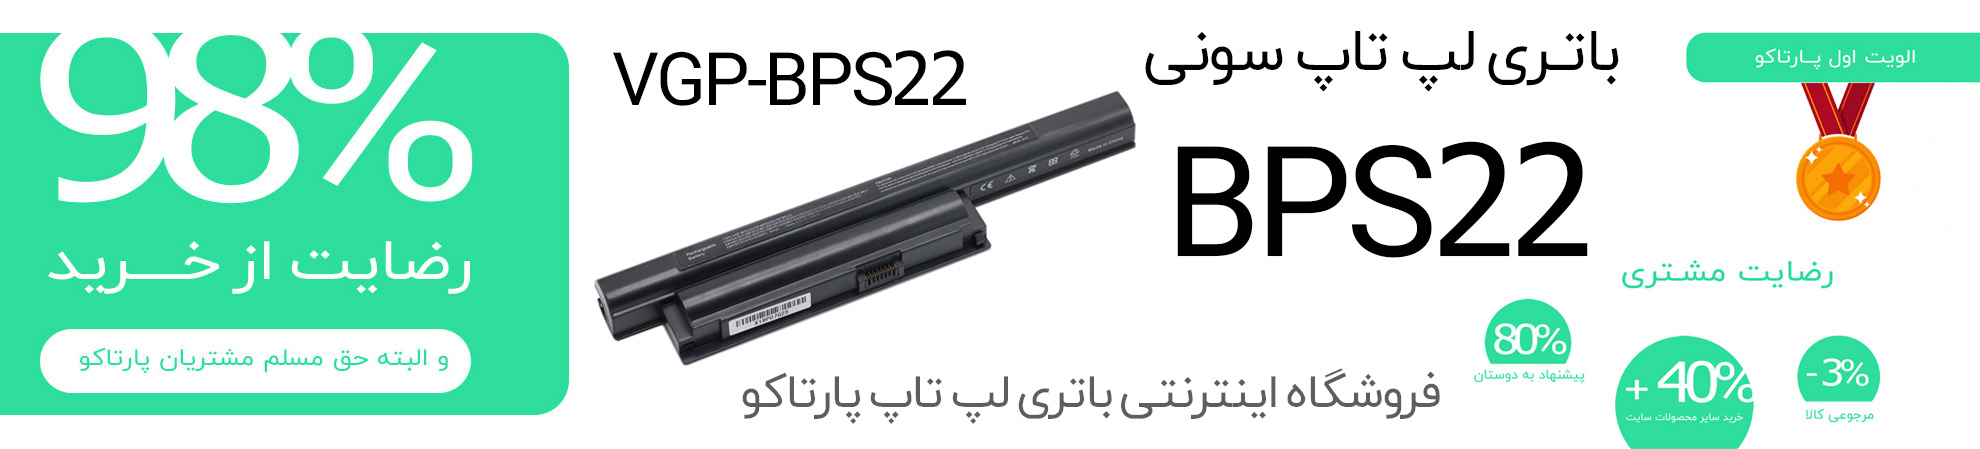 باتری BPS22